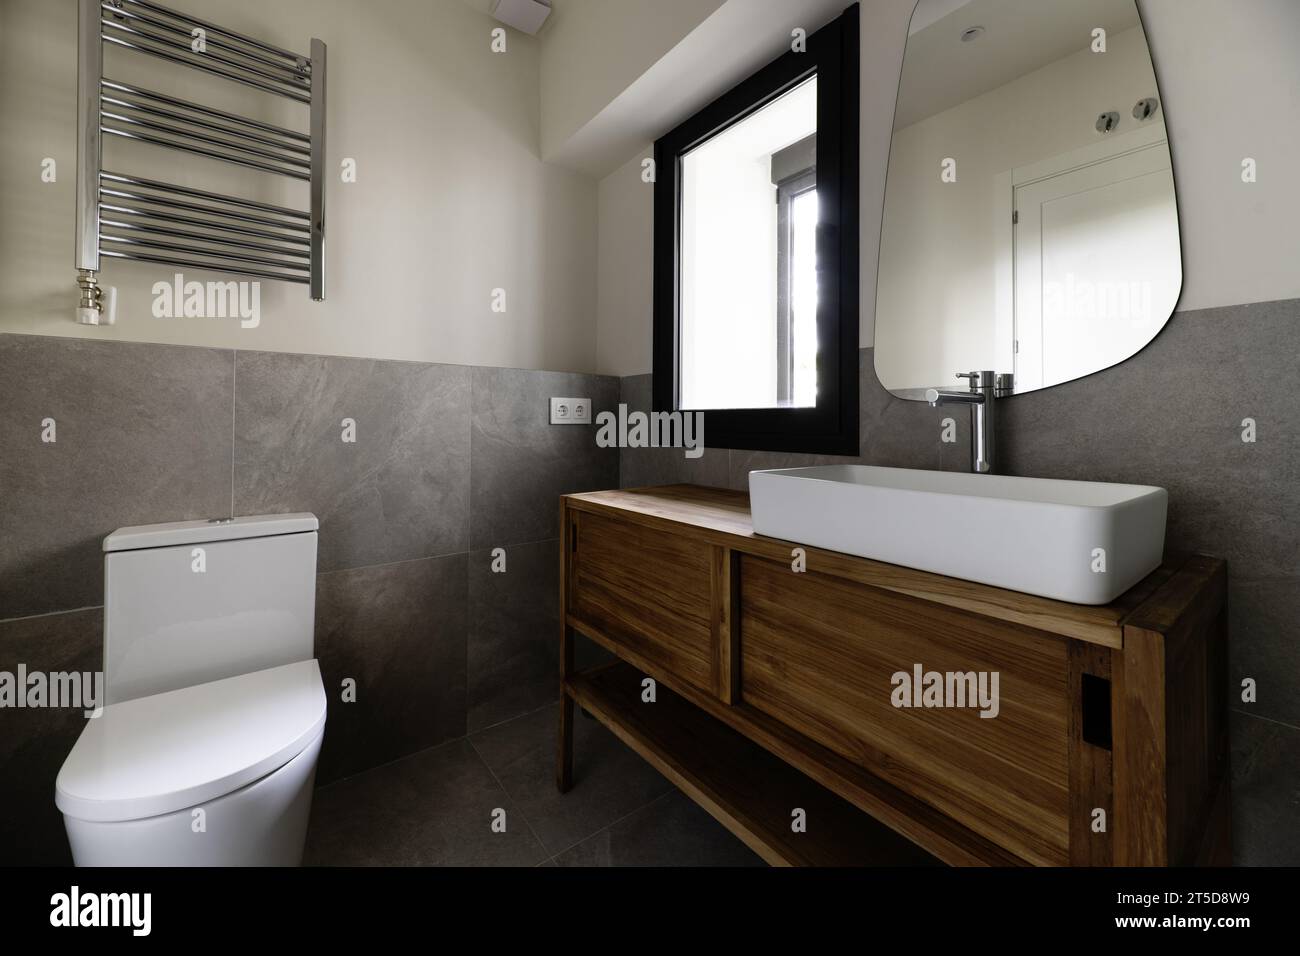 Kleines, modernes Design-Badezimmer mit grauen Fliesen mit Steineffekt, Spiegel an der Wand, weißes Porzellanwaschbecken, das auf einem Holzschrank auskragt, Handtuchtrocknung radia Stockfoto